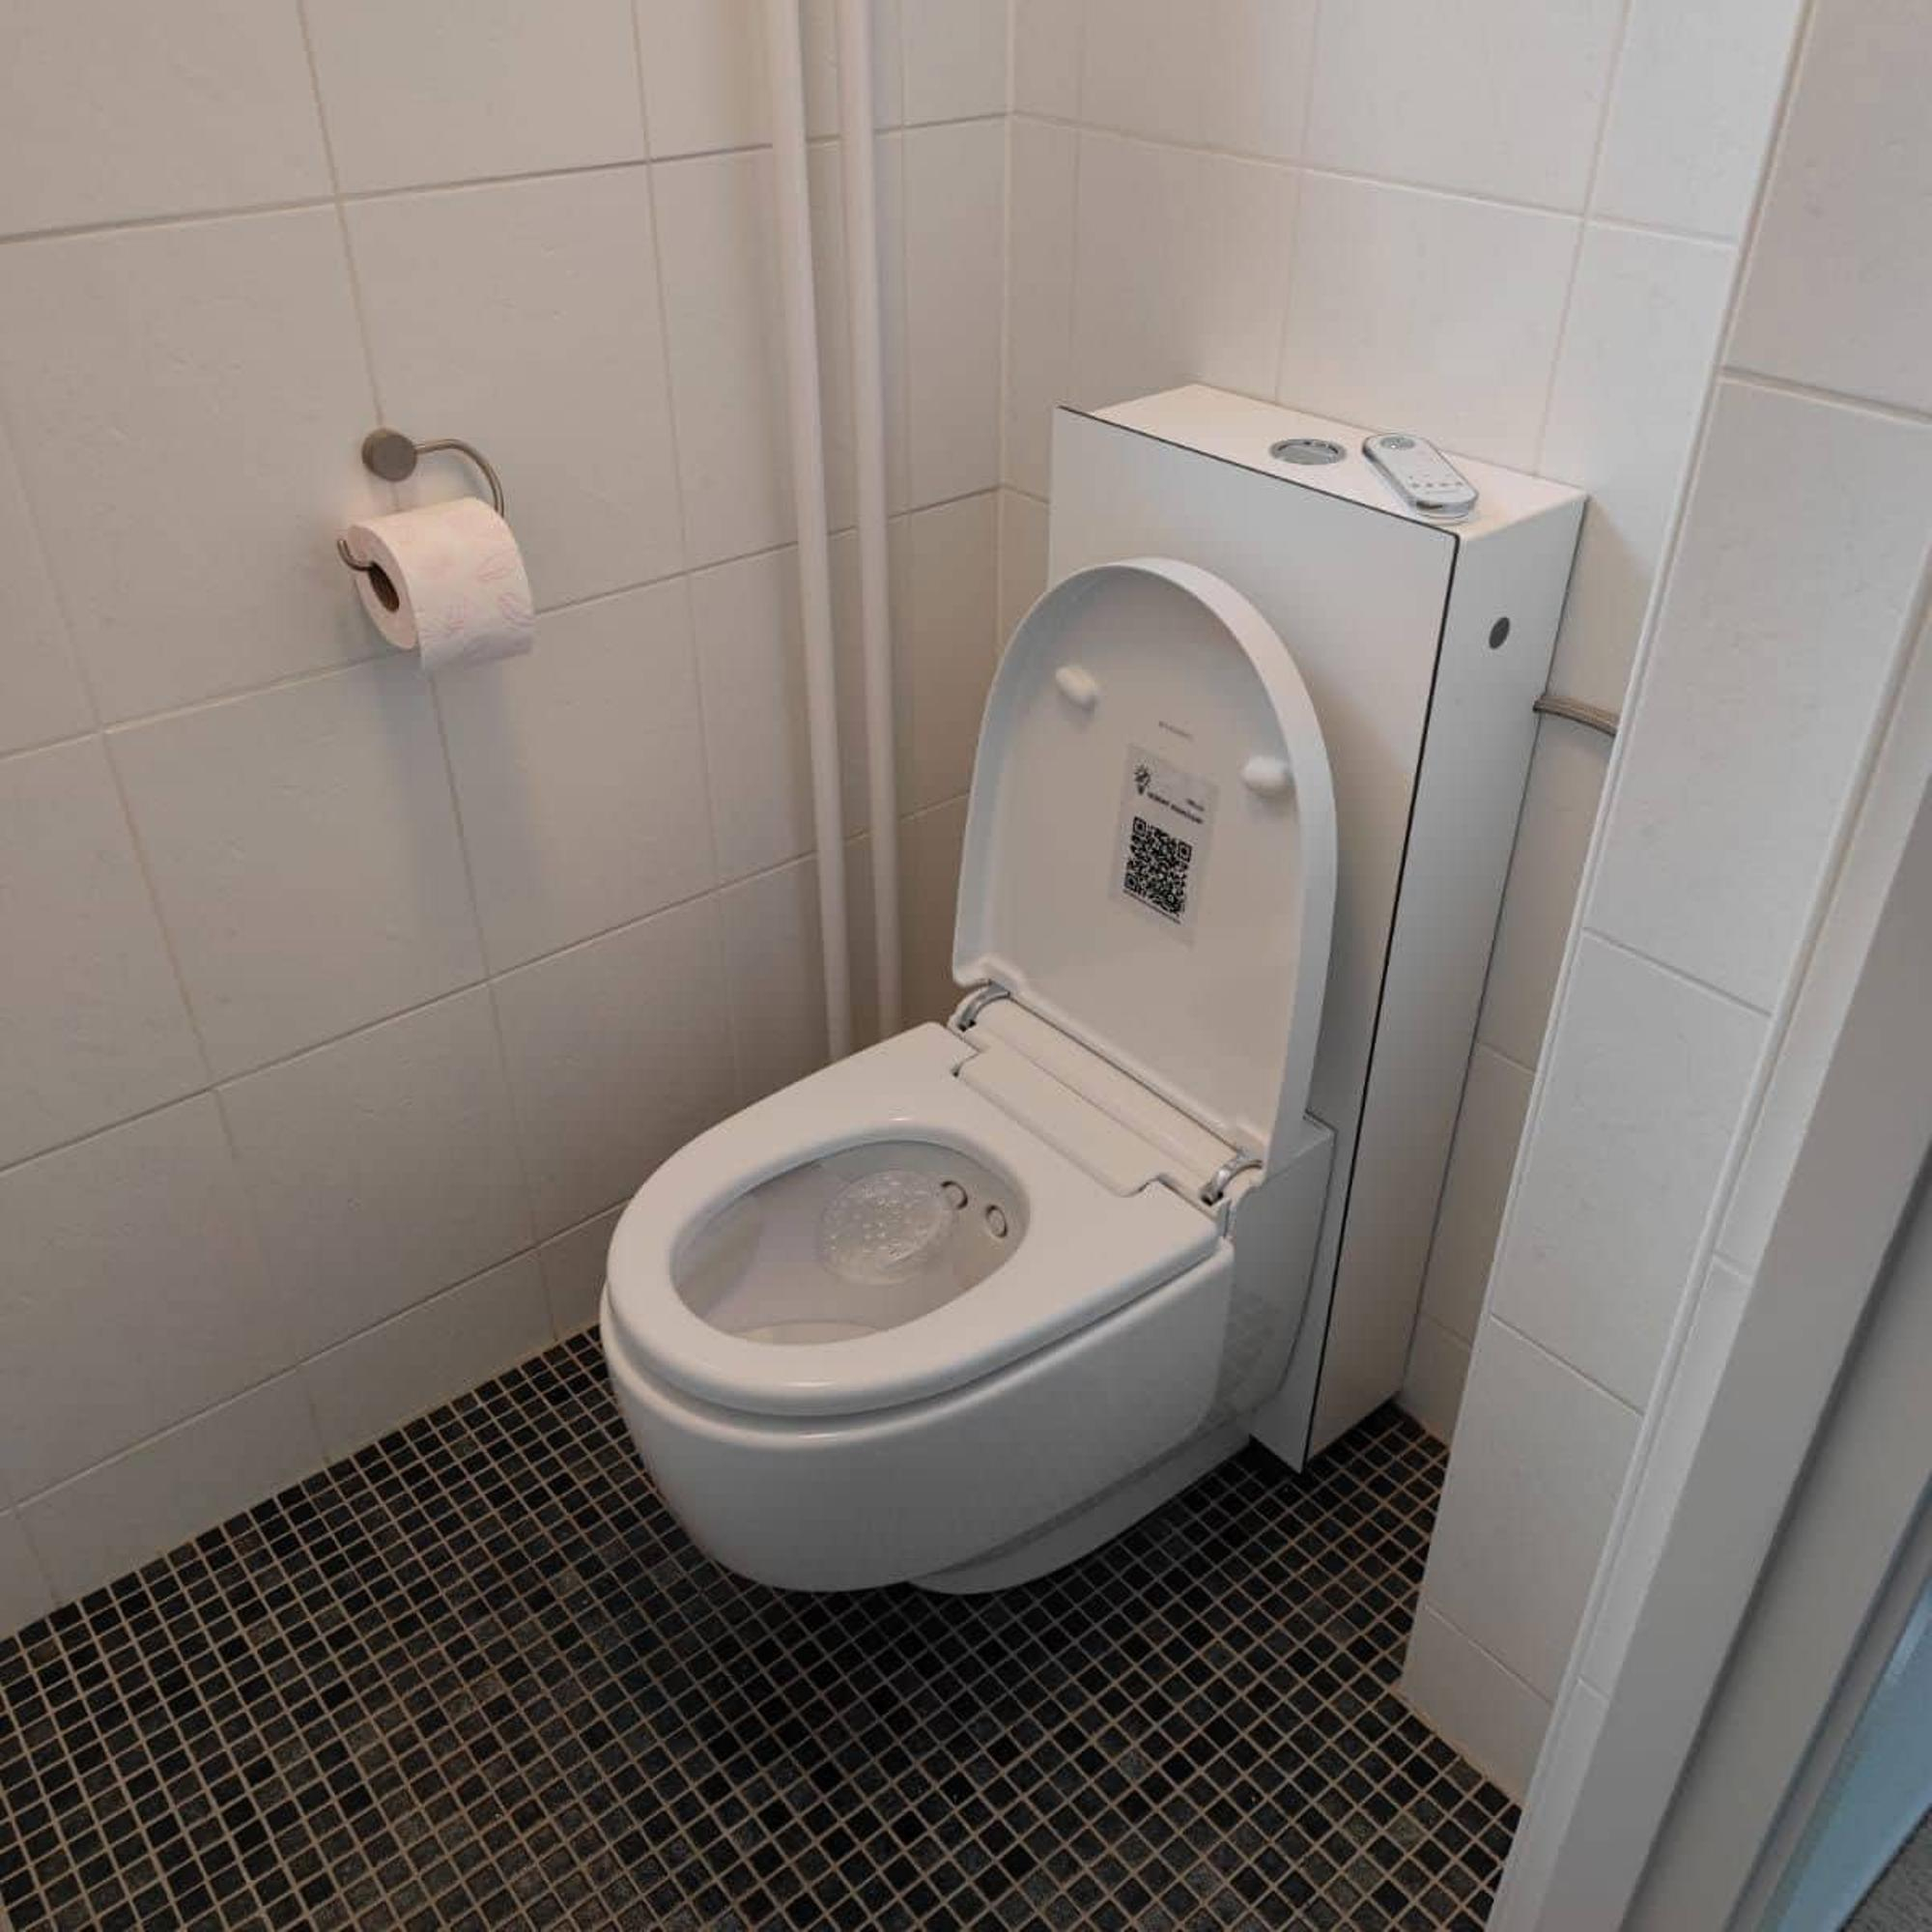 Geberit AquaClean Mera Comfort WC japonais sur pied sans bride